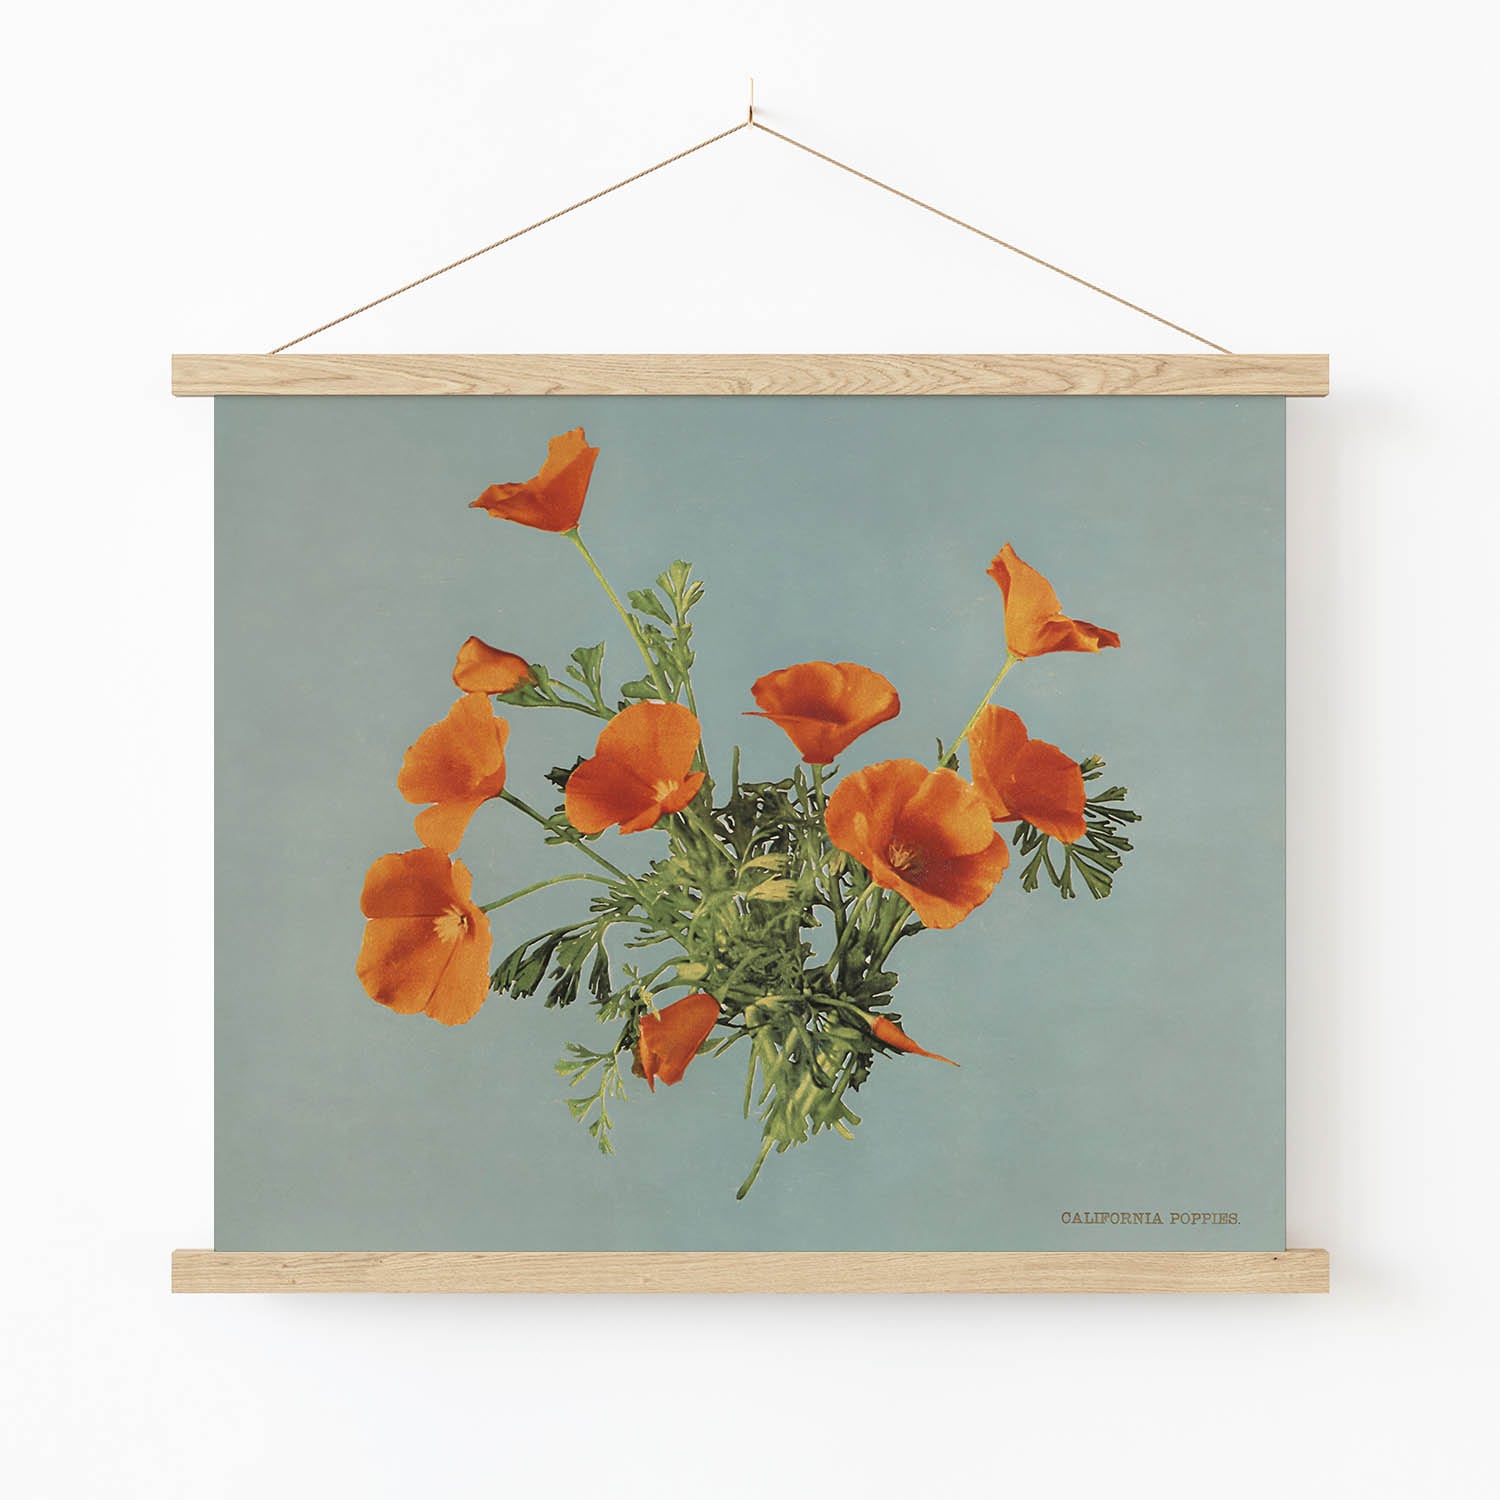 Vintage Floral Art Print in Wood Hanger Frame on Wall